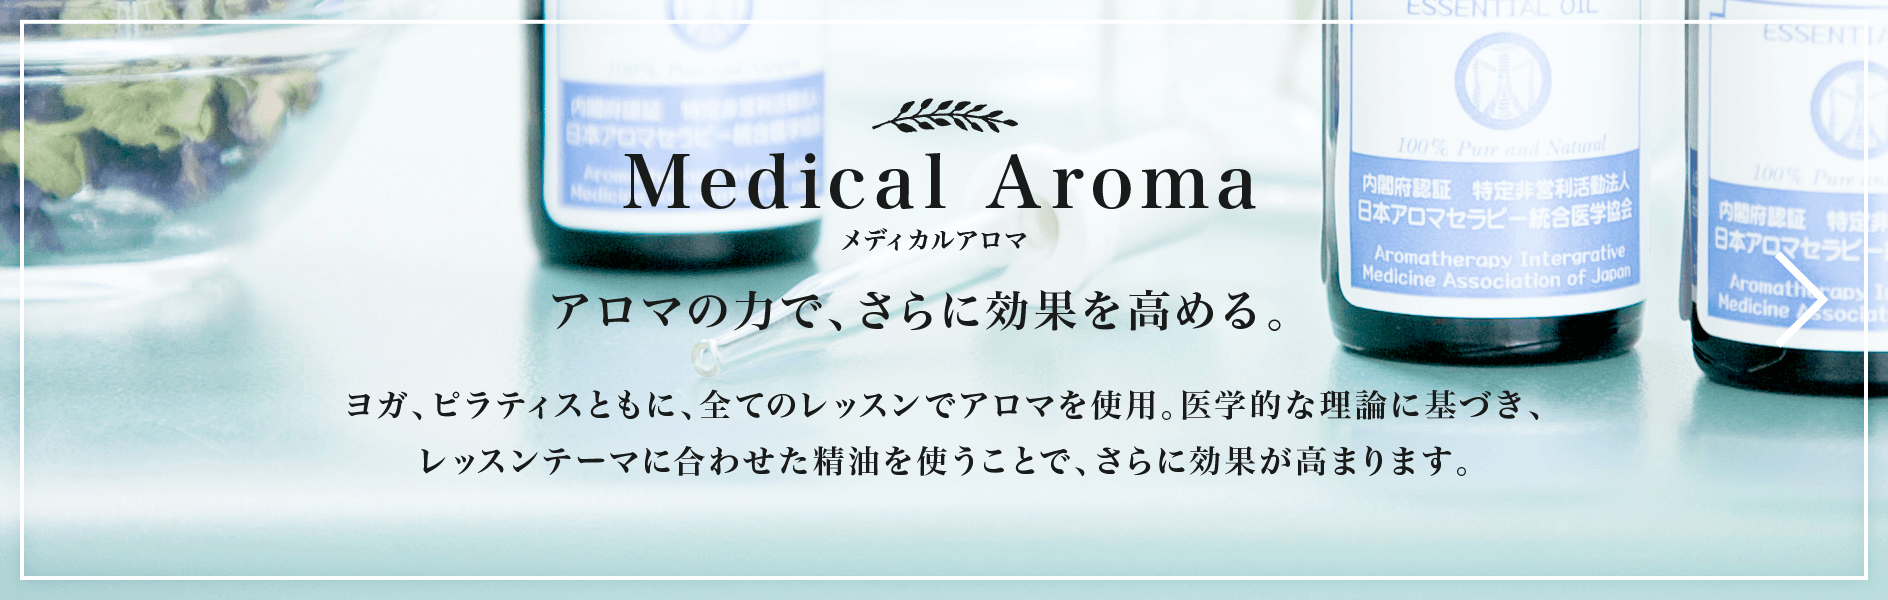 MedicalAroma